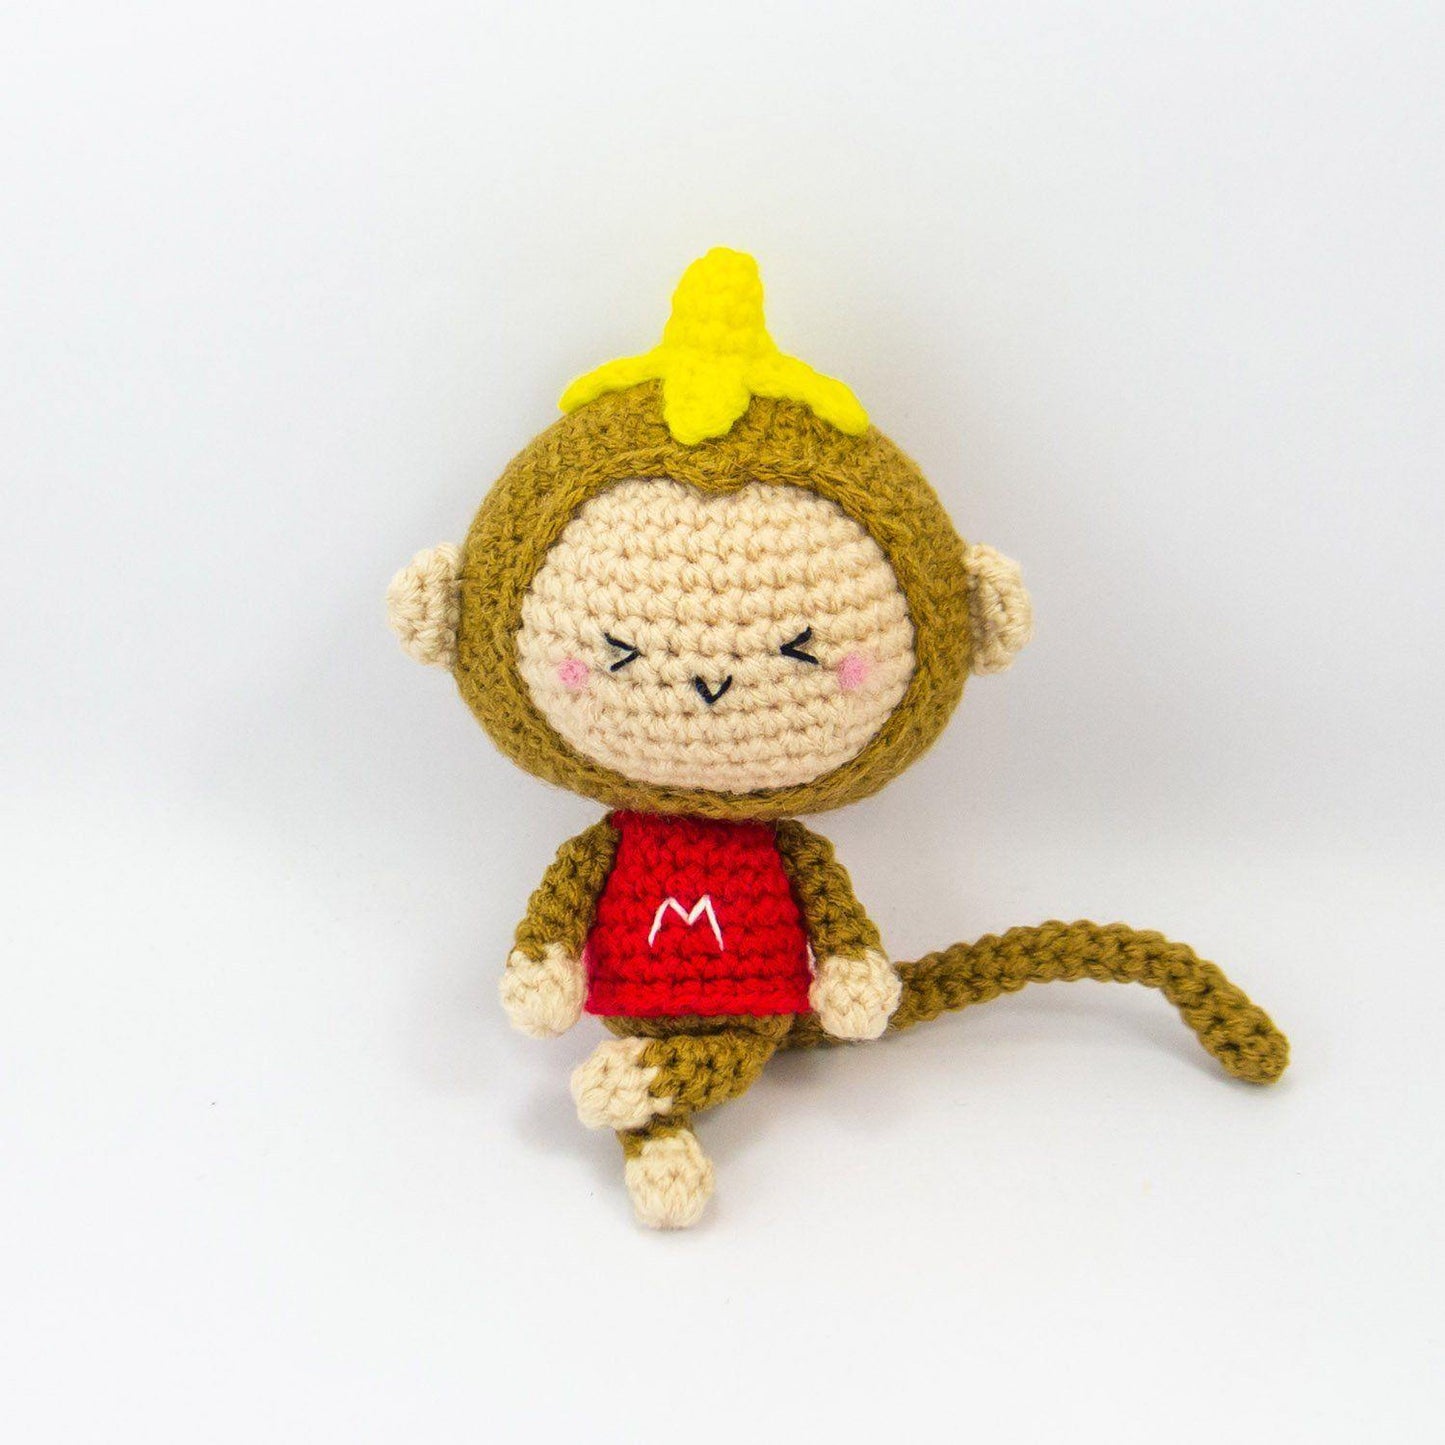 Monkey Crochet Pattern for home decor